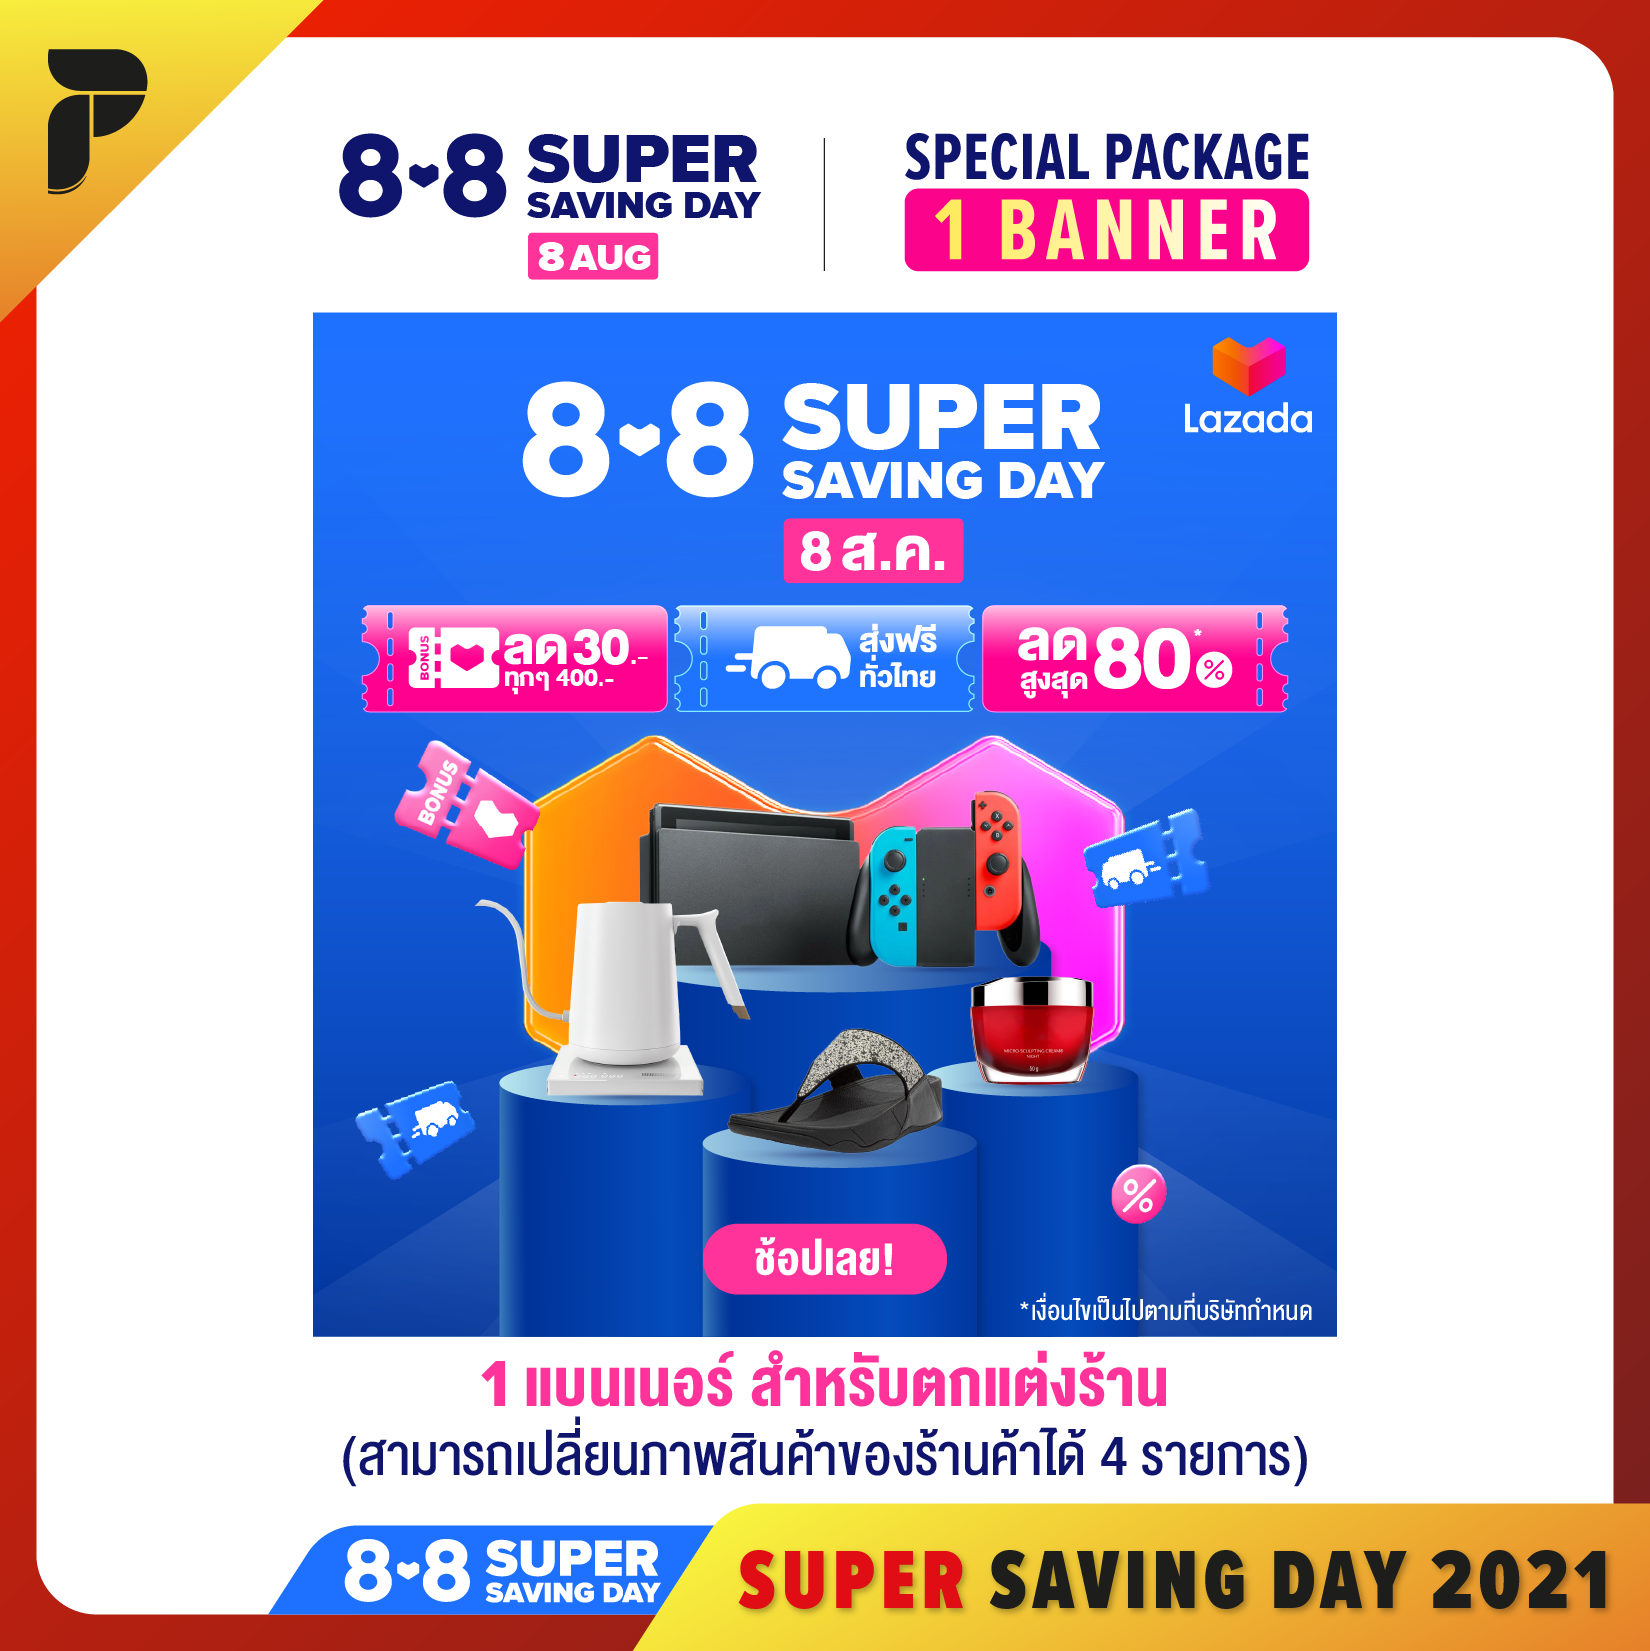 บริการออกแบบใหม่ธีม 8.8 SUPER SAVING DAY สำหรับตกแต่งร้านค้า 1 แบนเนอร์ PathGraphic Studio Customized Banner Store Design Special Theme Campaign